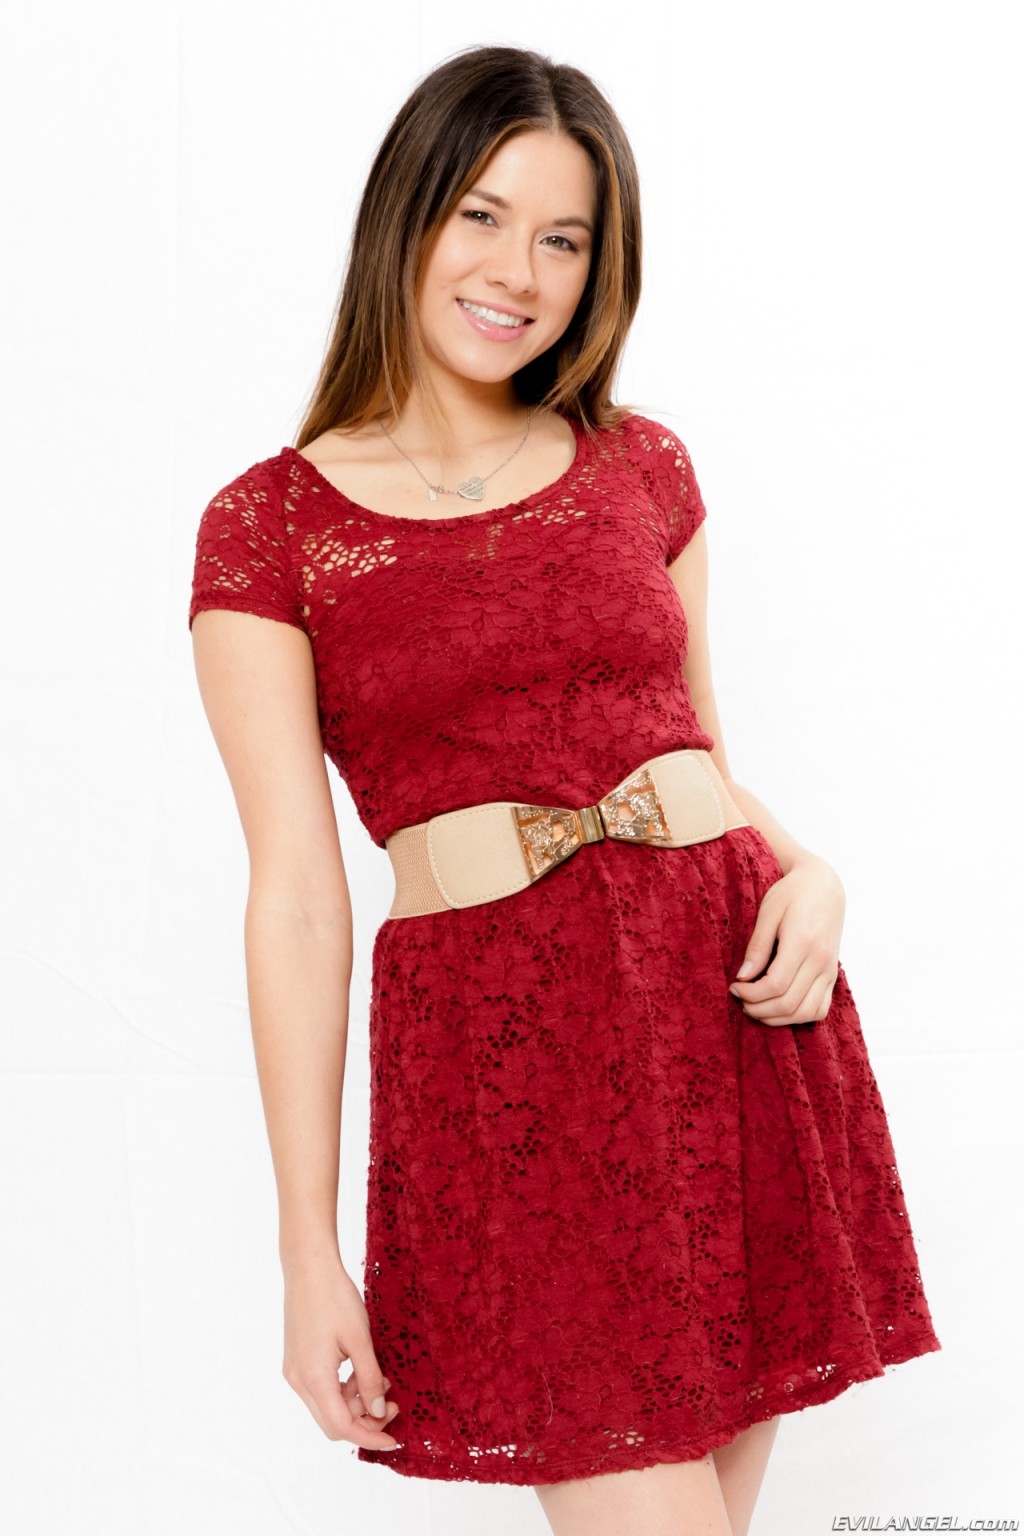 Shyla jennings en vestido rojo
 #76437988